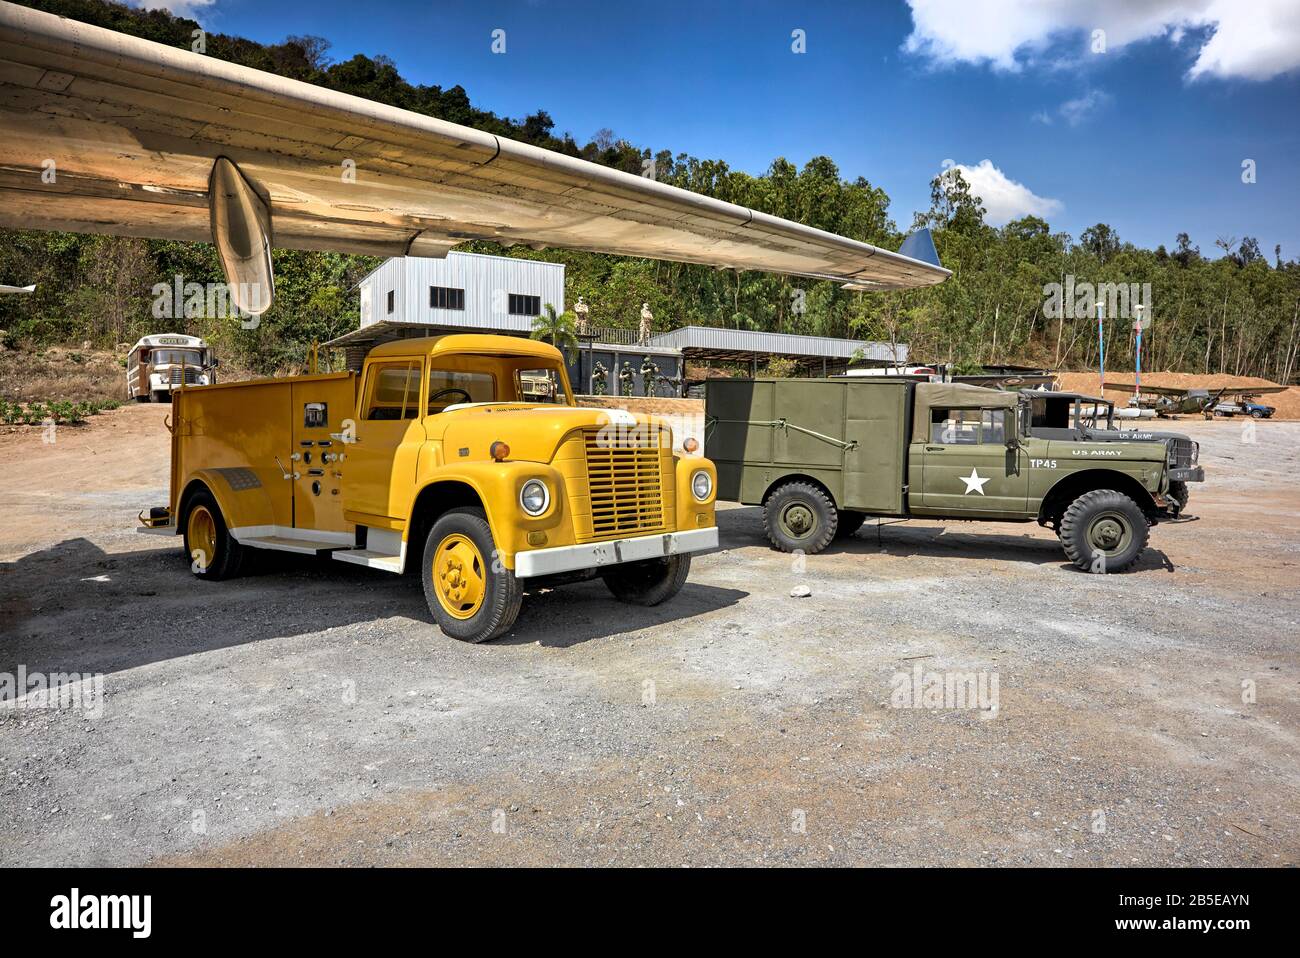 Feuerwehrfahrzeug gelb. US-Armee WW2-Baustelle mit alter und antiker amerikanischer Kriegsausrüstung. Thailand Südost-Asien Stockfoto